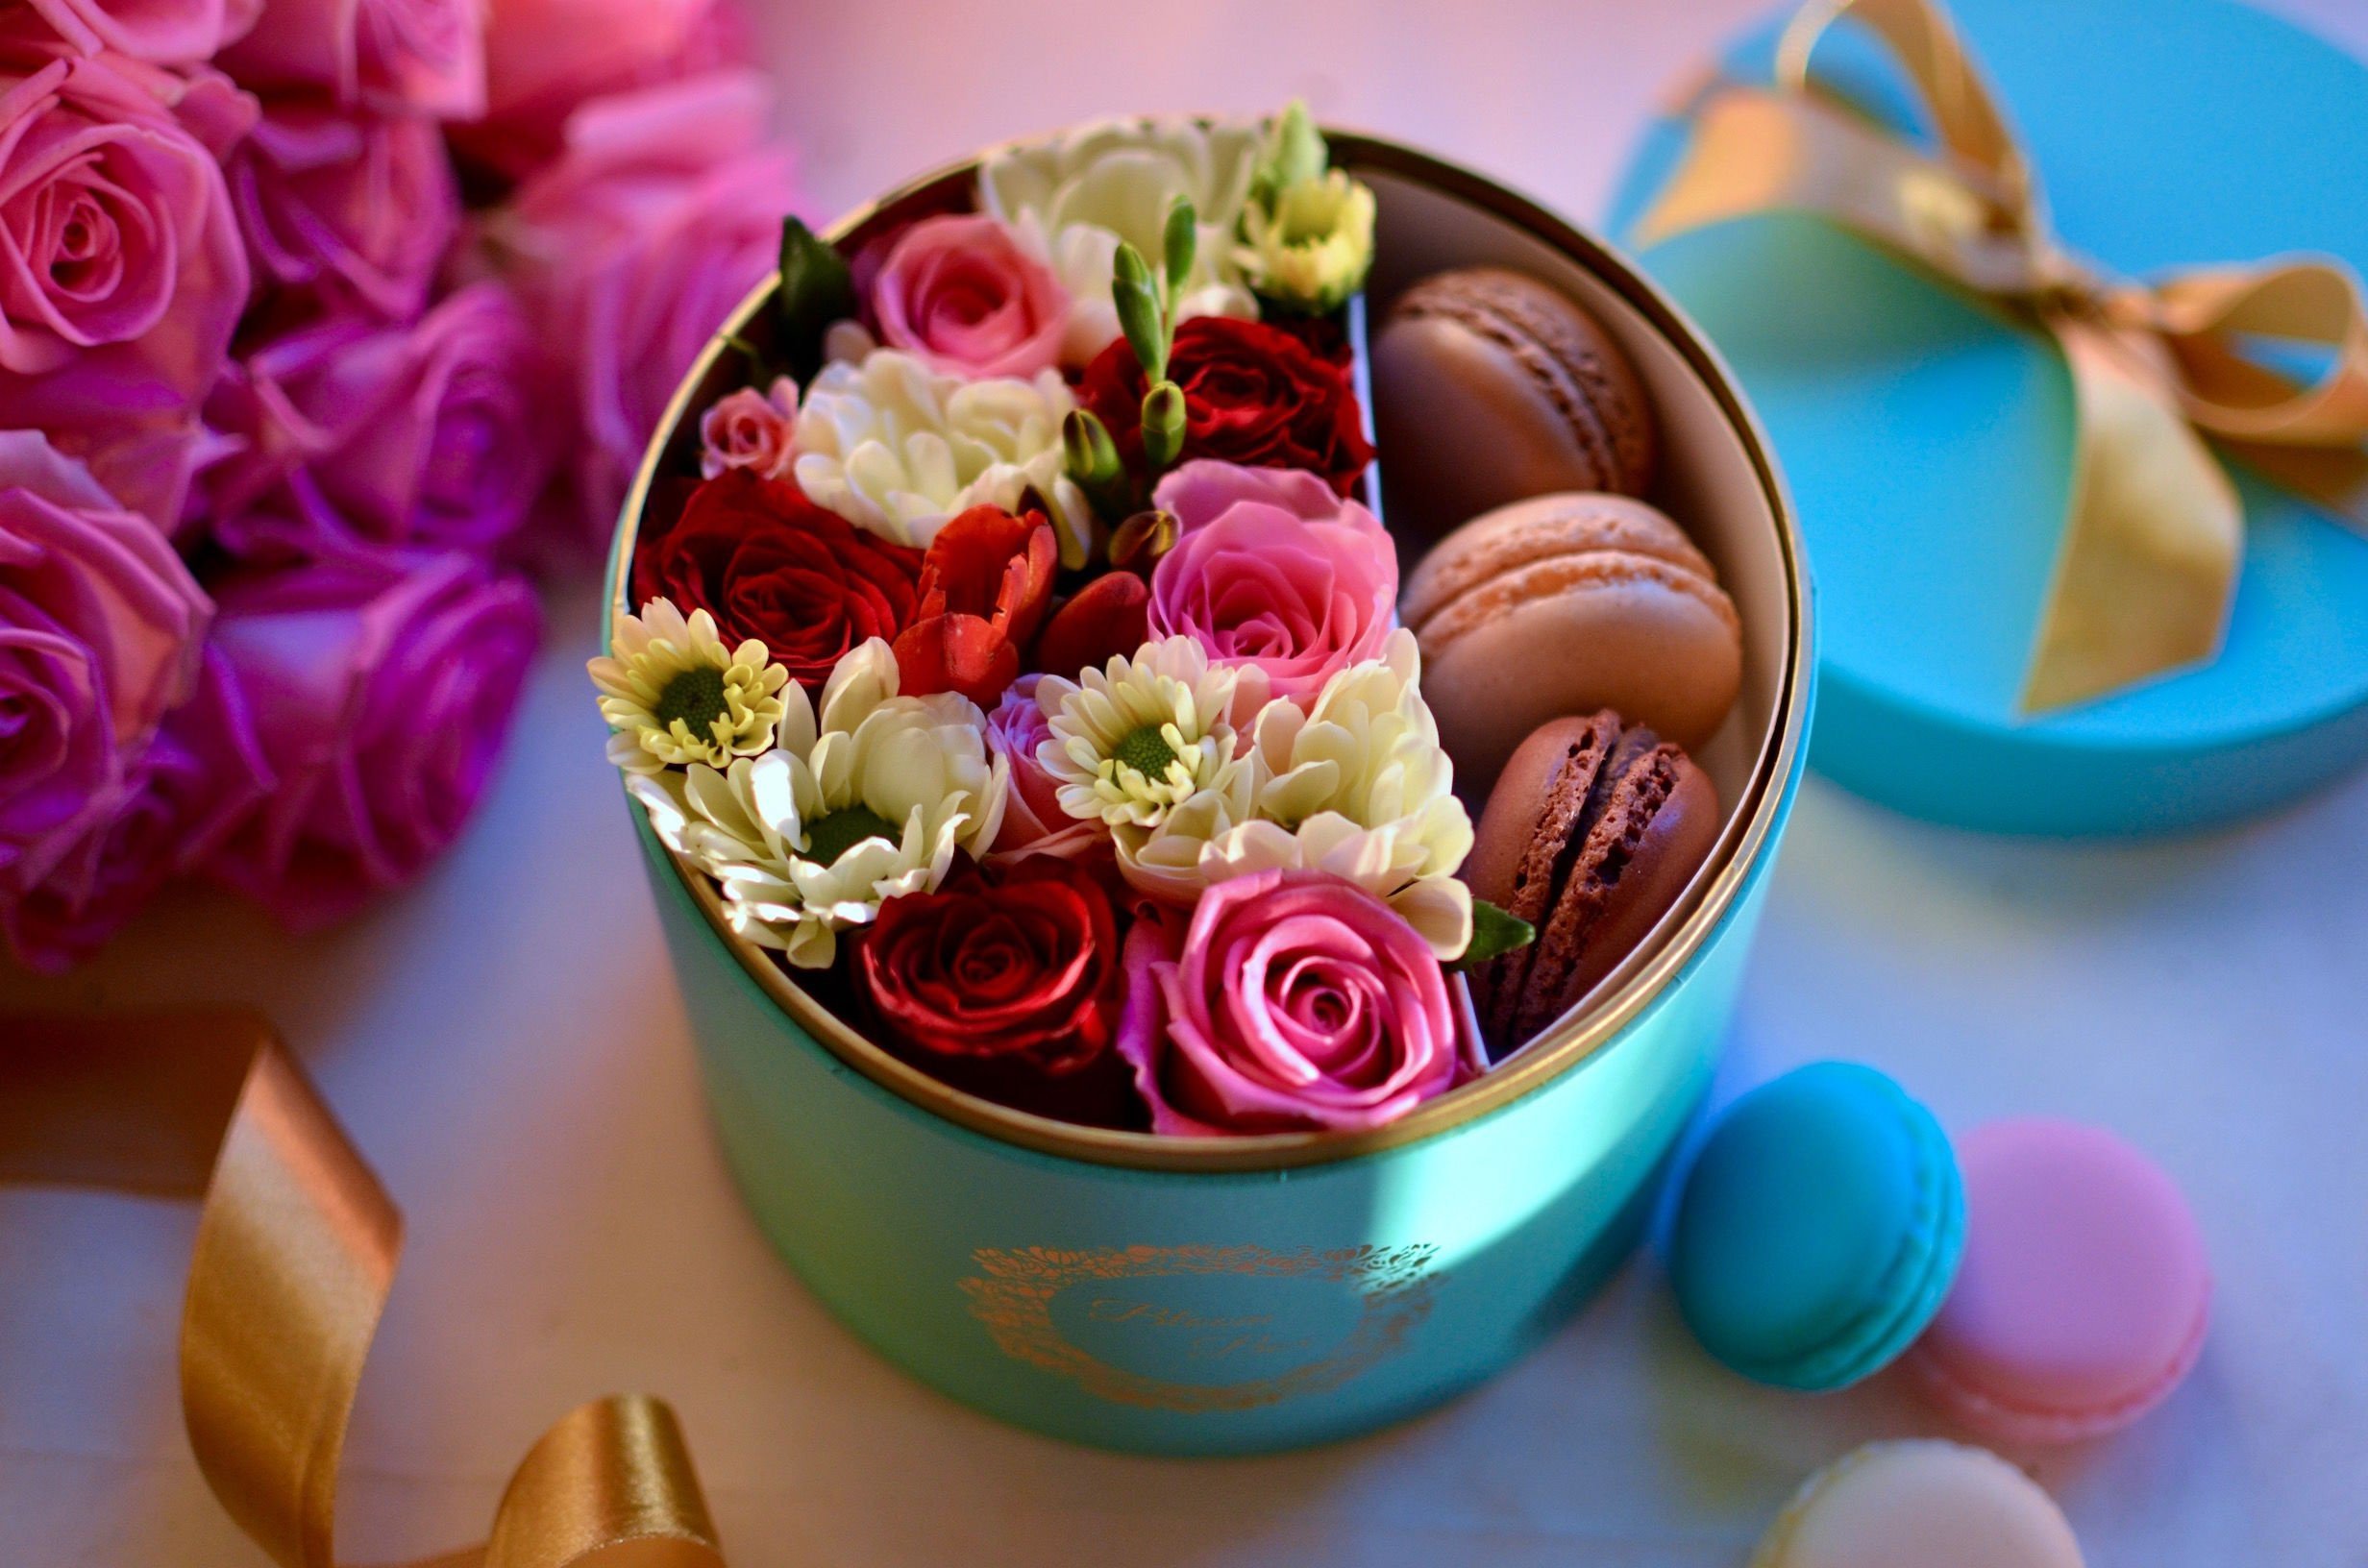 Цветы и шоколадка. Цветы в подарок. Цветы с конфетами. Цветы в коробке. Коробка с цветами и конфетами.